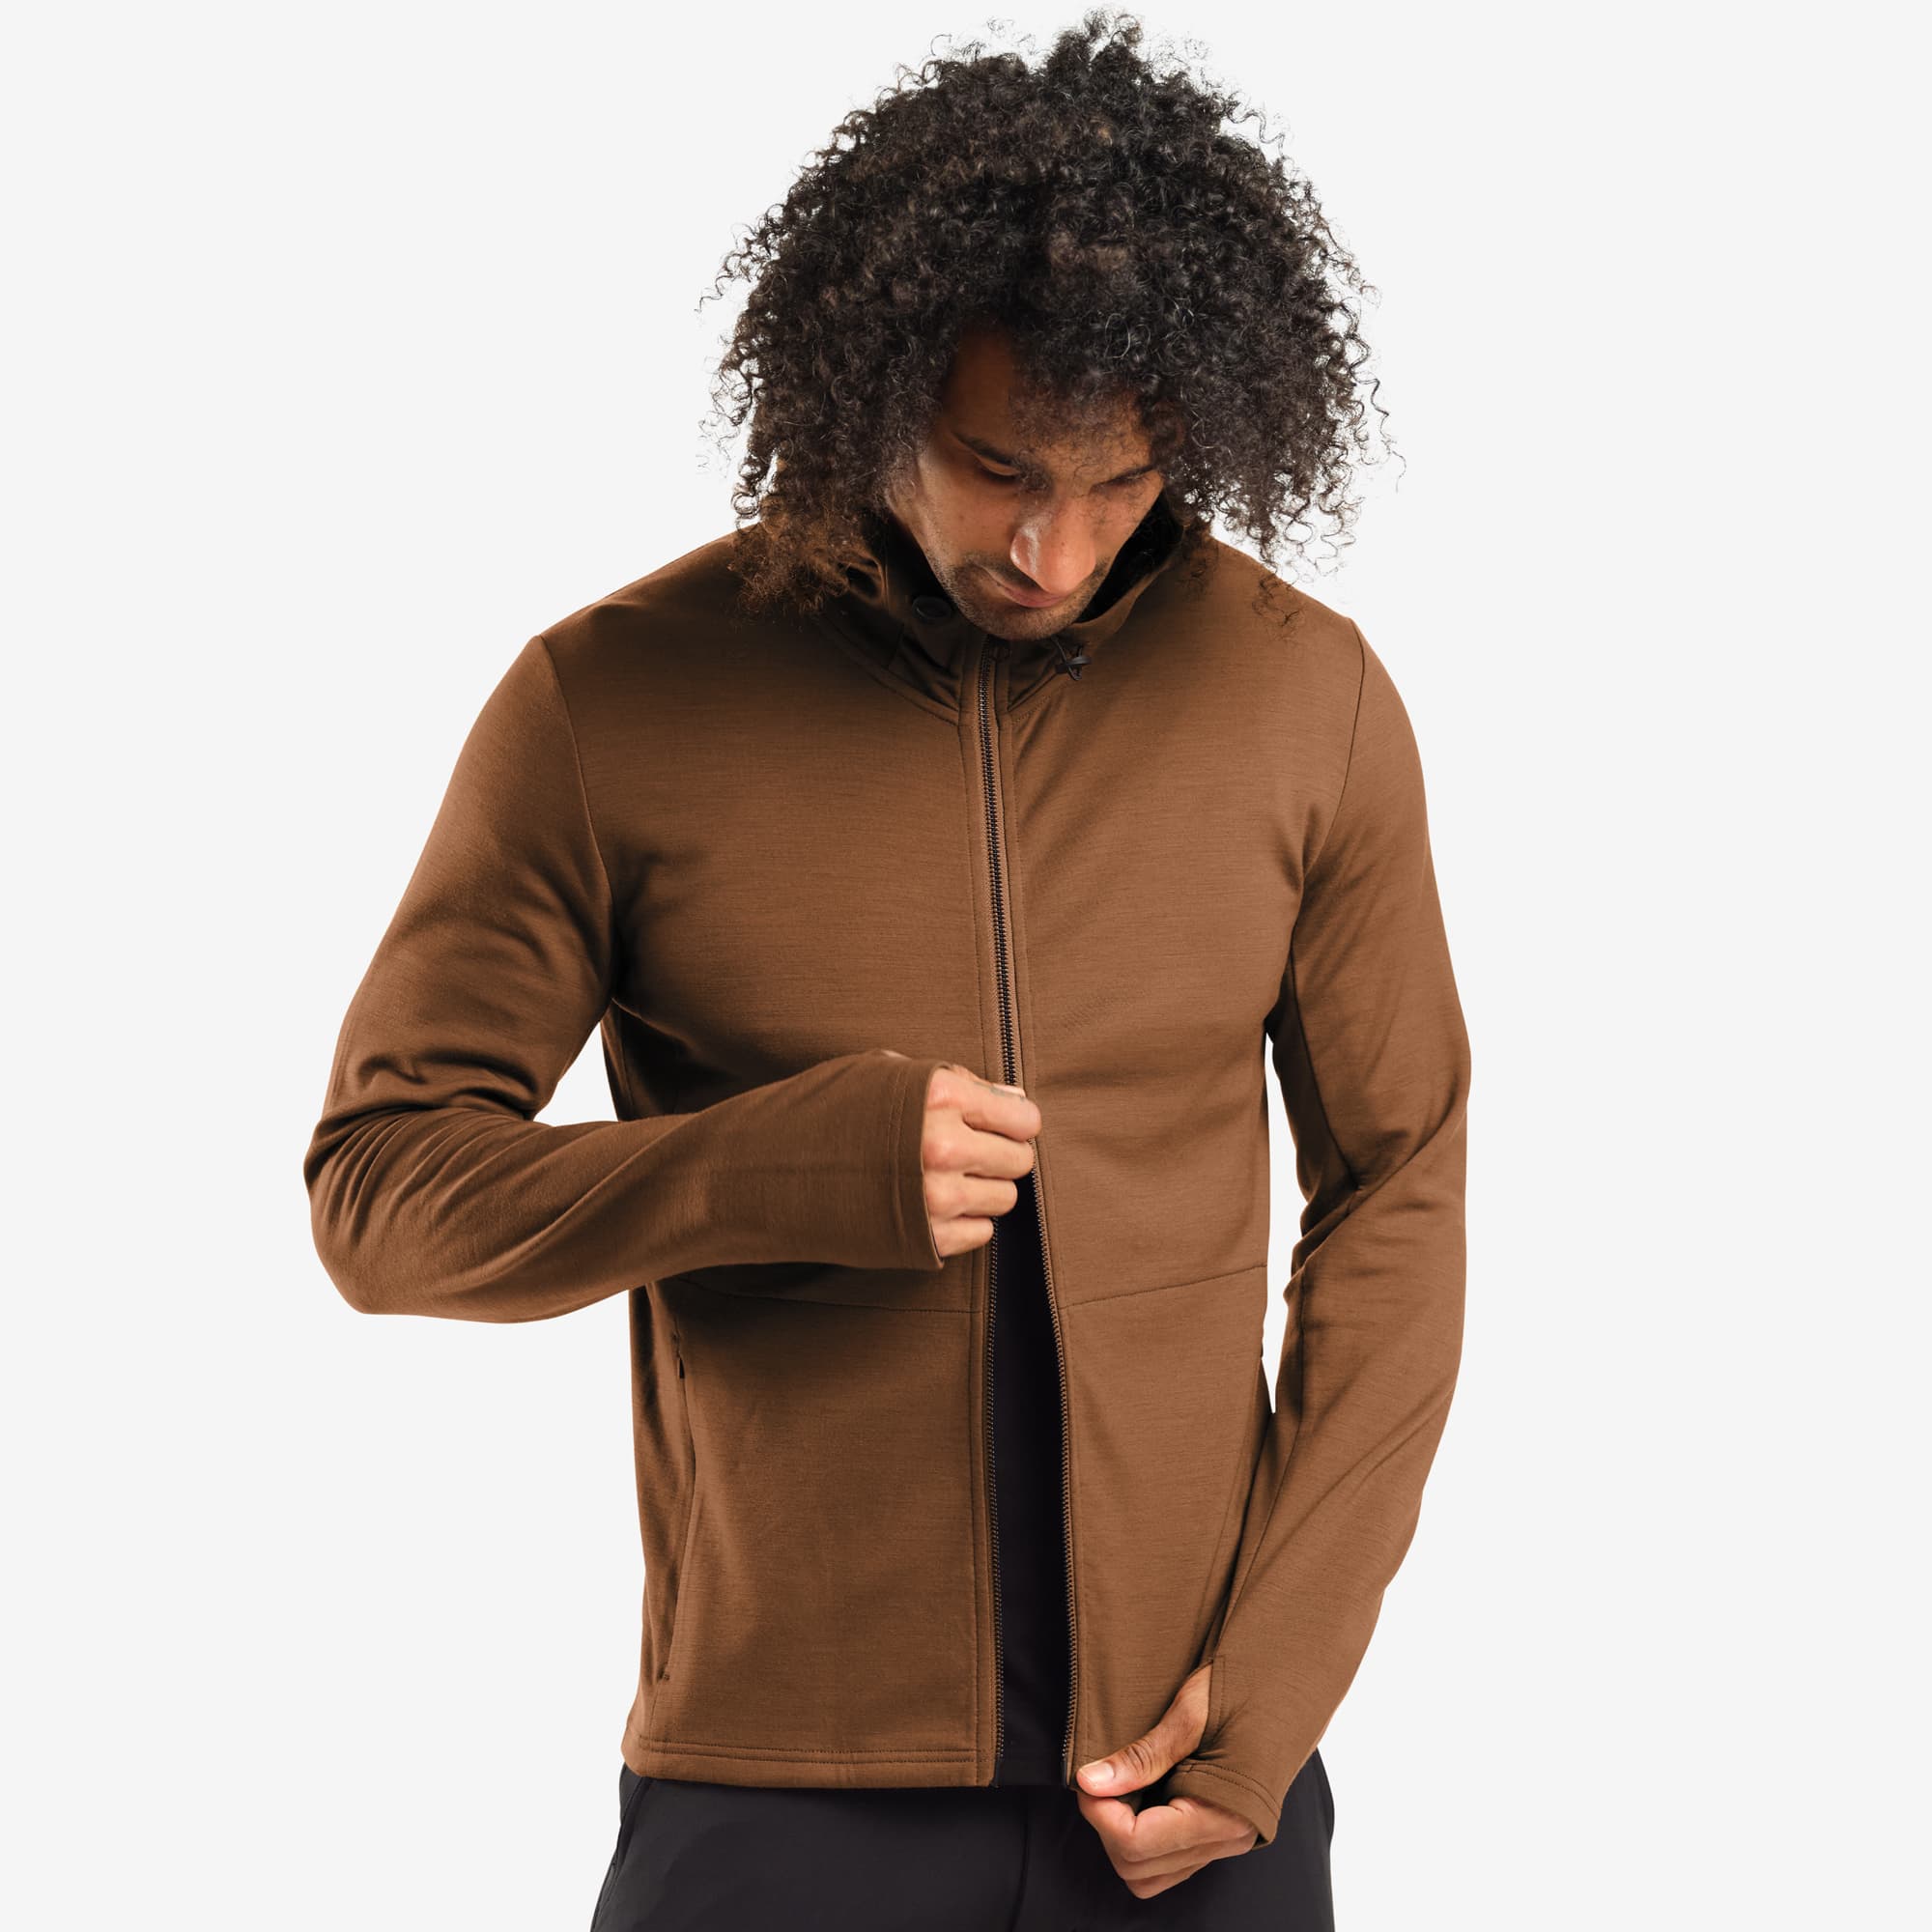 Men's merino blend hoodie in brown worn by a man #color_monks robe